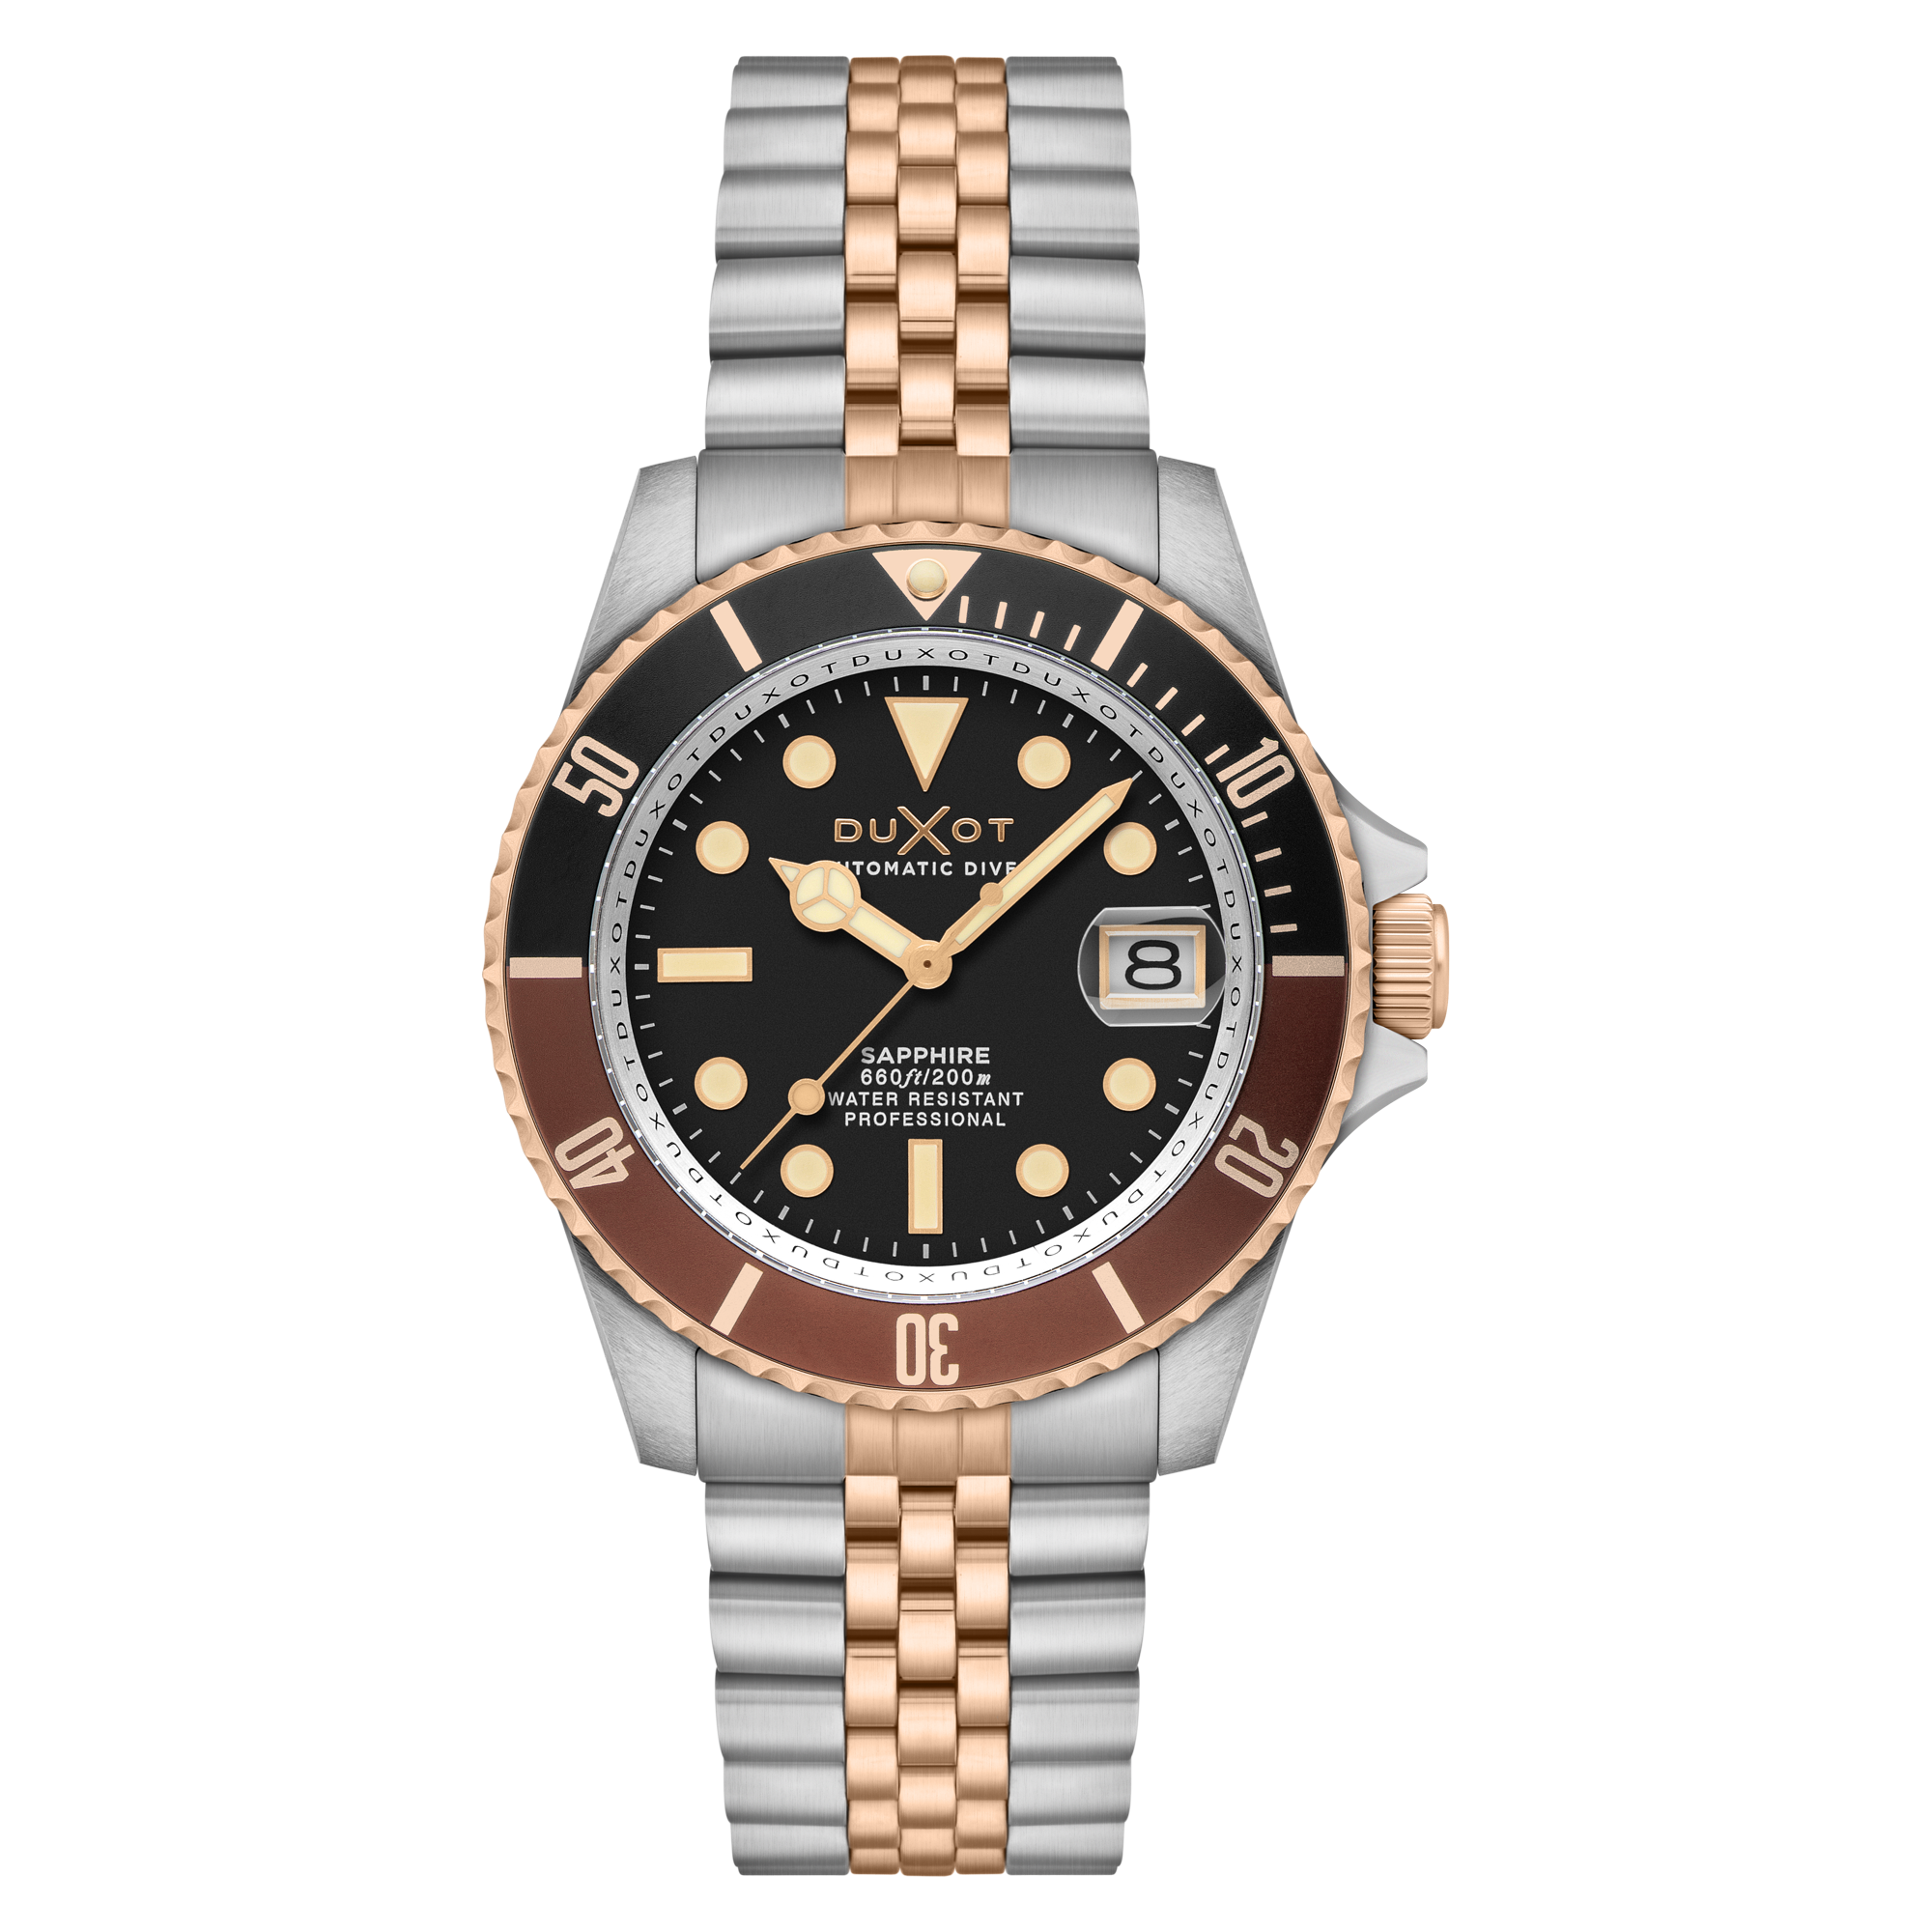 Duxot Duxot Atlantica Diver Automatic Two Tone Brown Men's Watch DX-2057-66